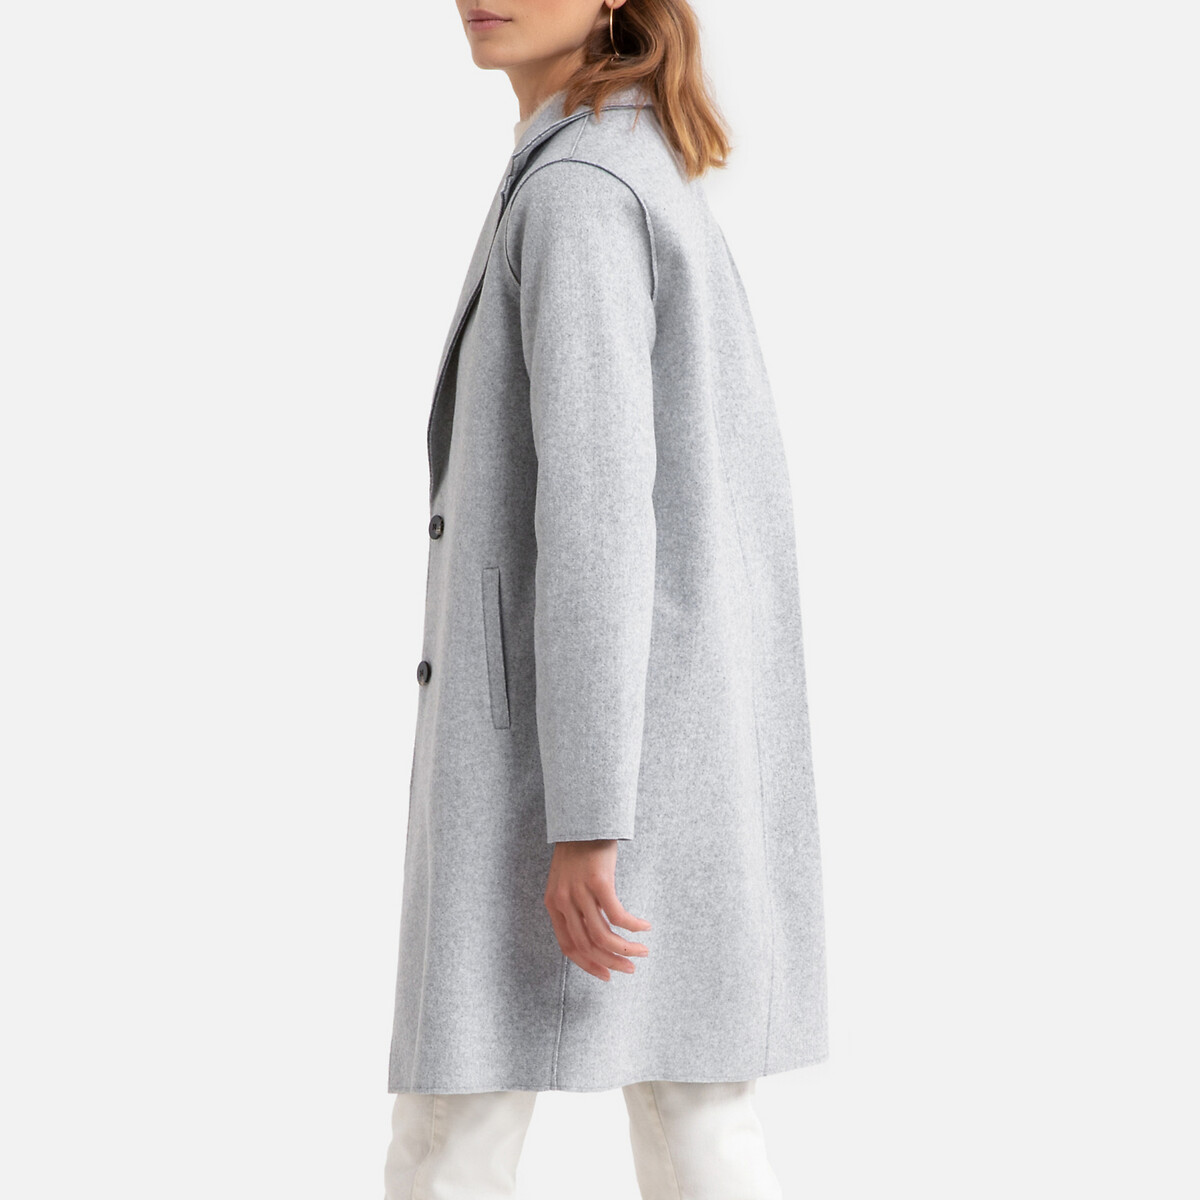 Пальто La Redoute Средней длины на пуговицах M серый, размер M - фото 4